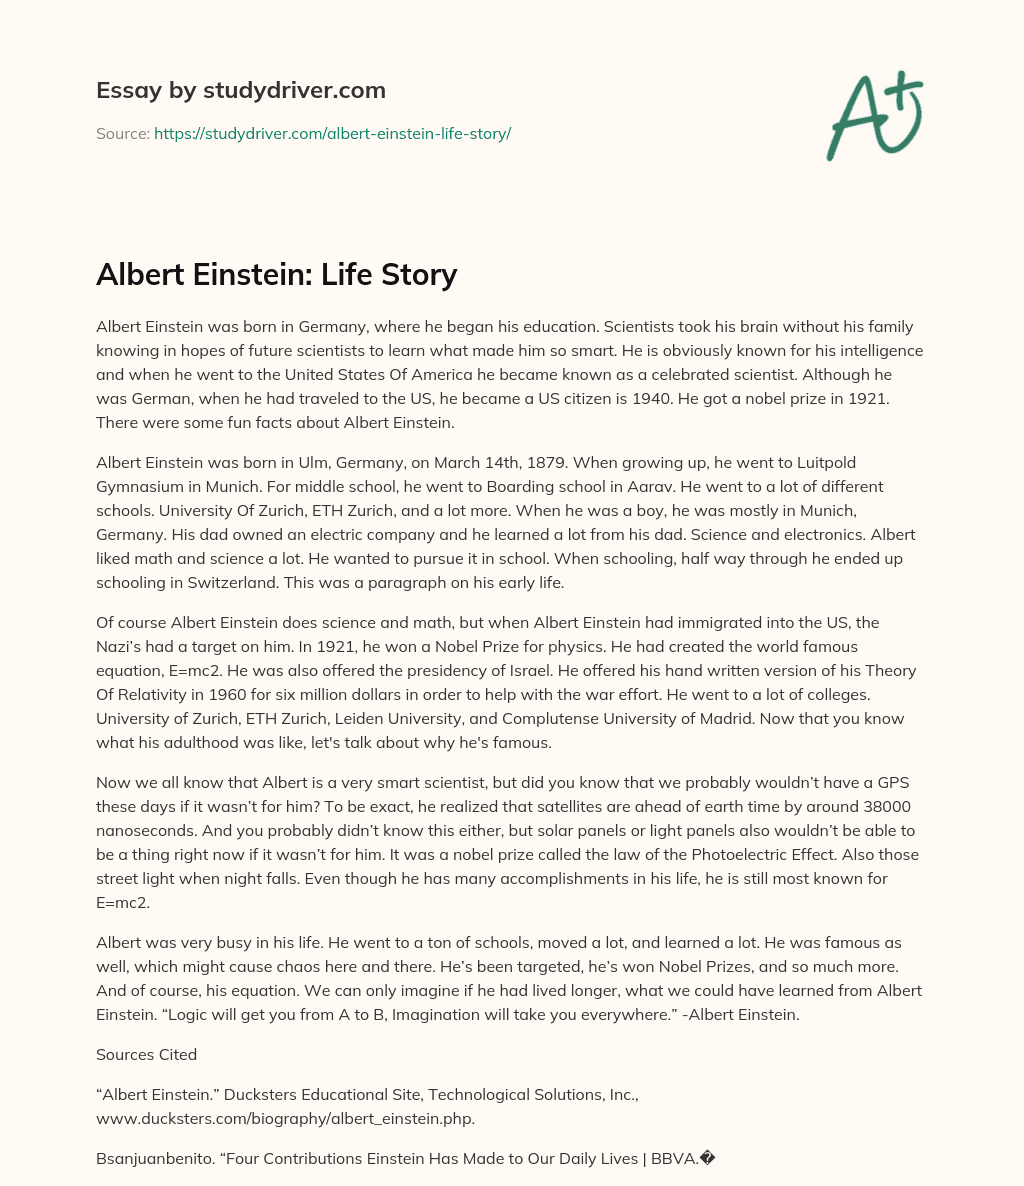 Albert Einstein: Life Story essay